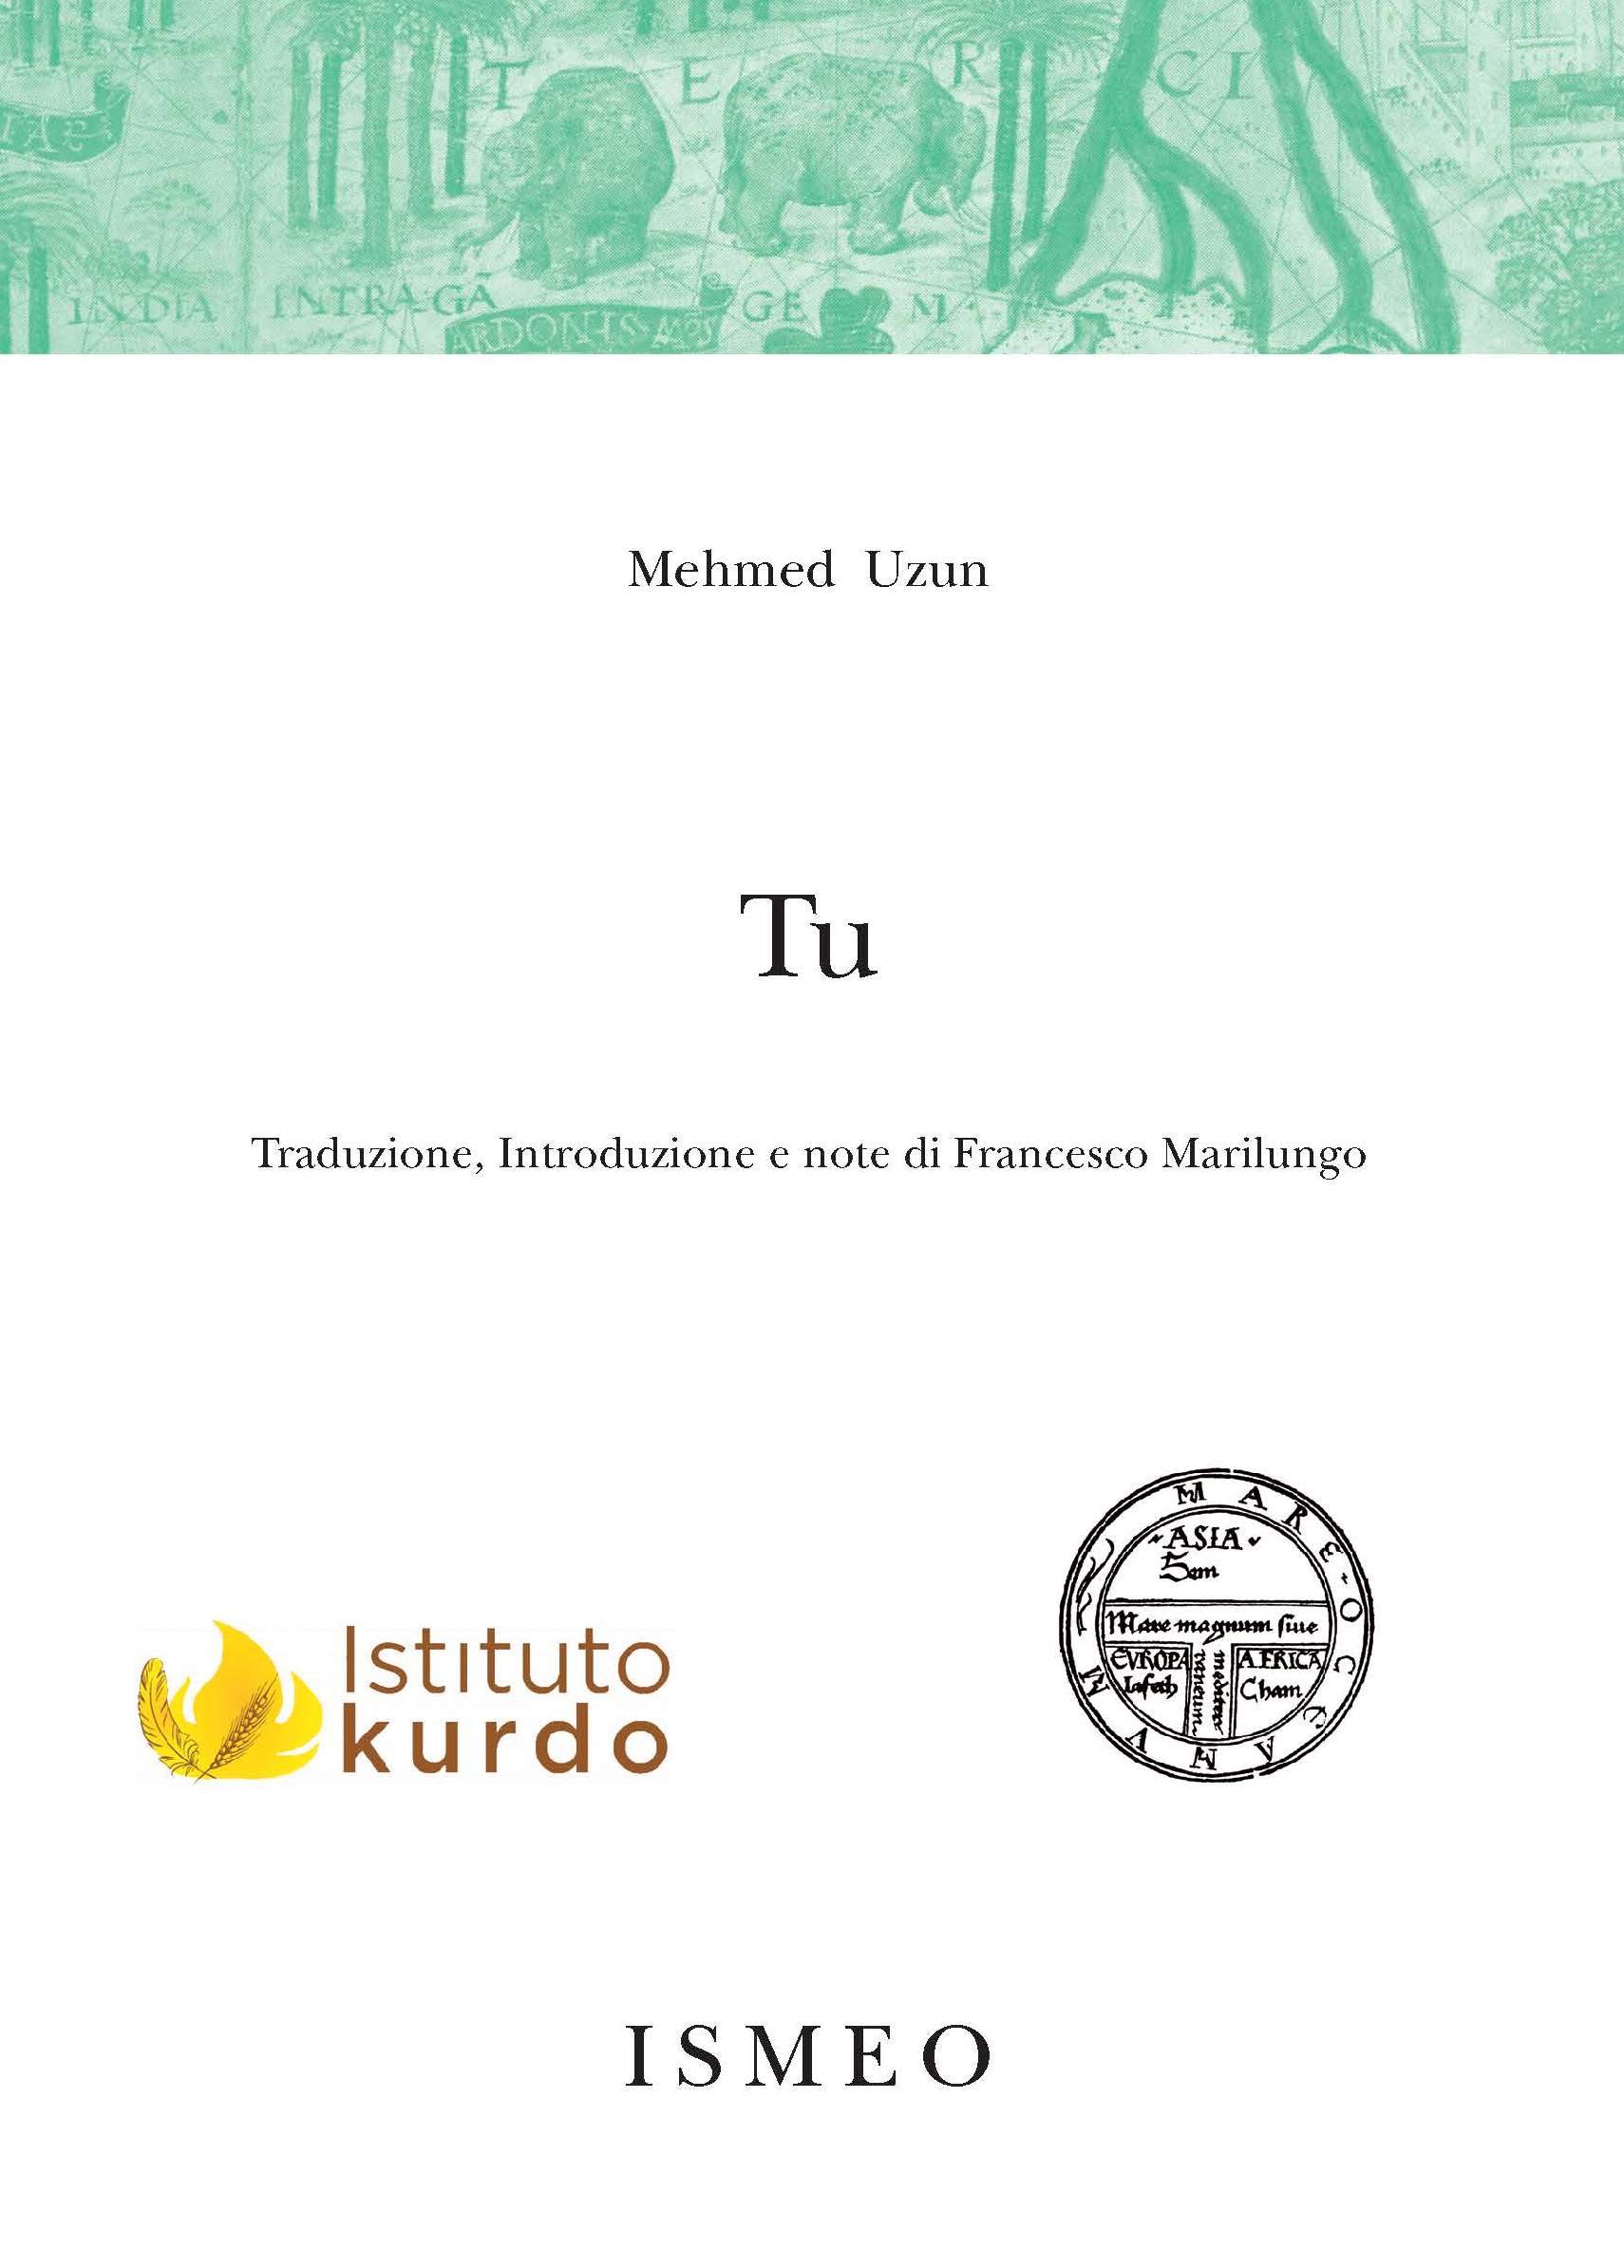 TU <br/>
Traduzione, introduzione e note di Francesco Marilungo -  Il Novissimo Ramusio 17<br/>
seconda edizione